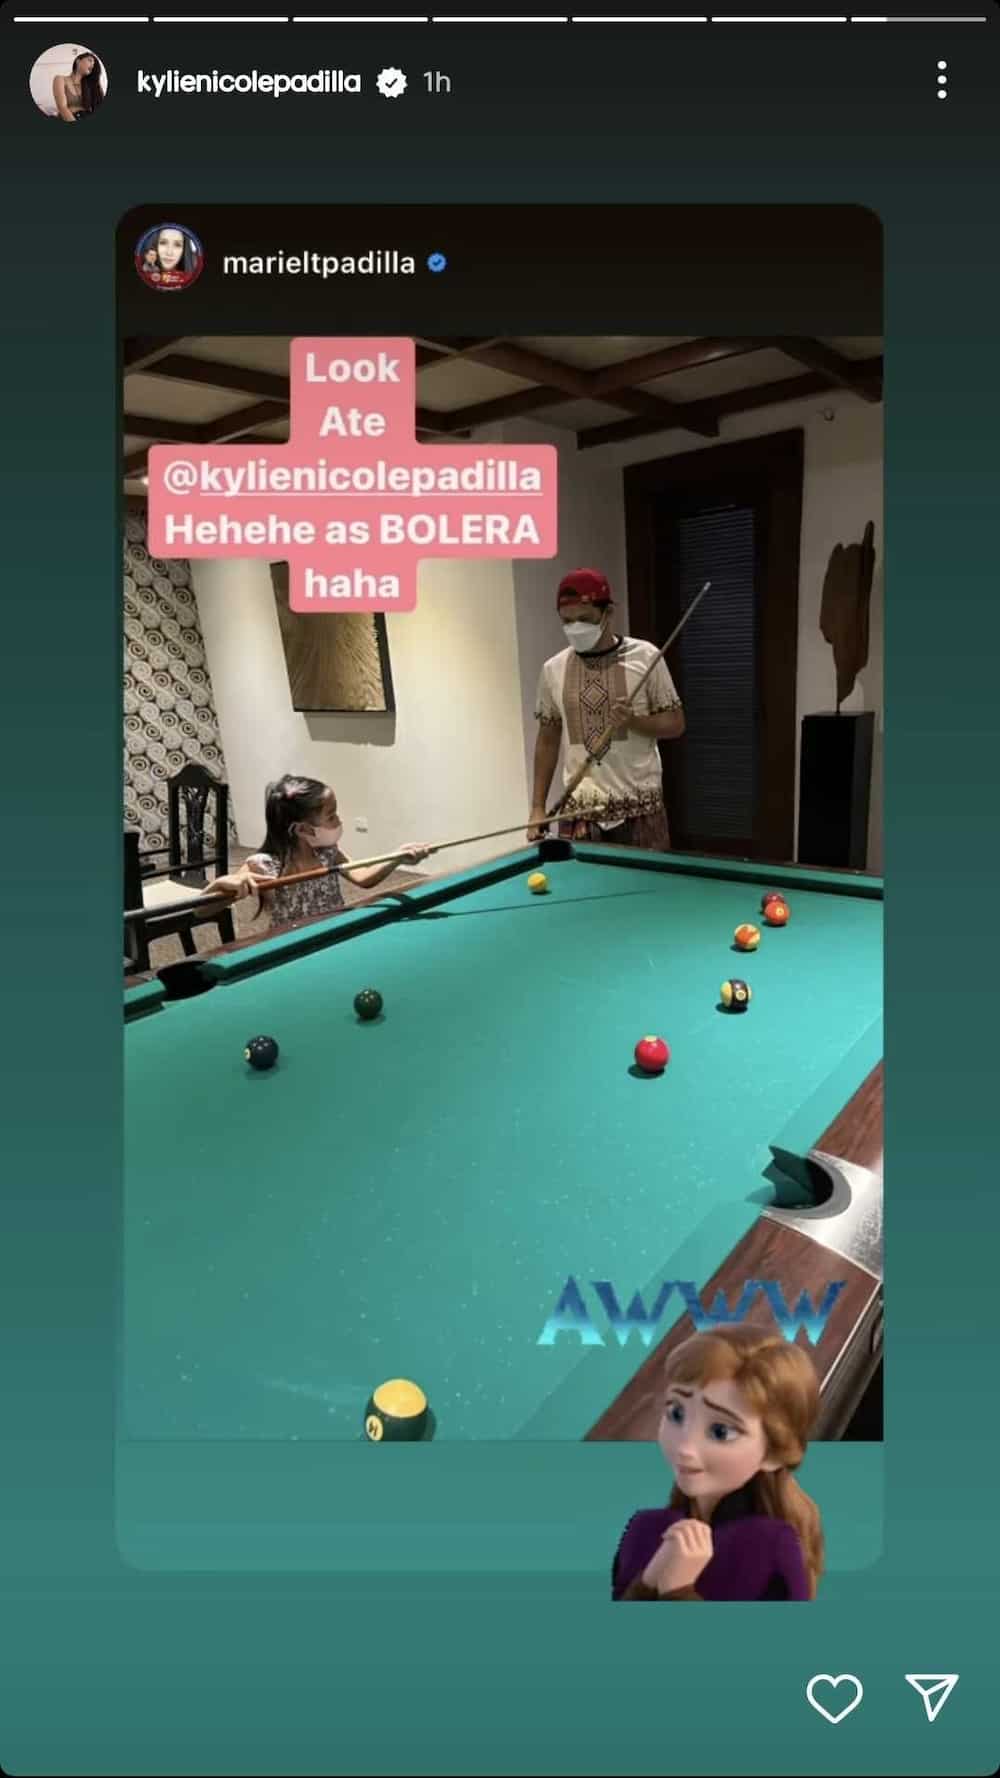 Mariel Padilla posts photo of Isabella "as Bolera" and tags Kylie Padilla in it